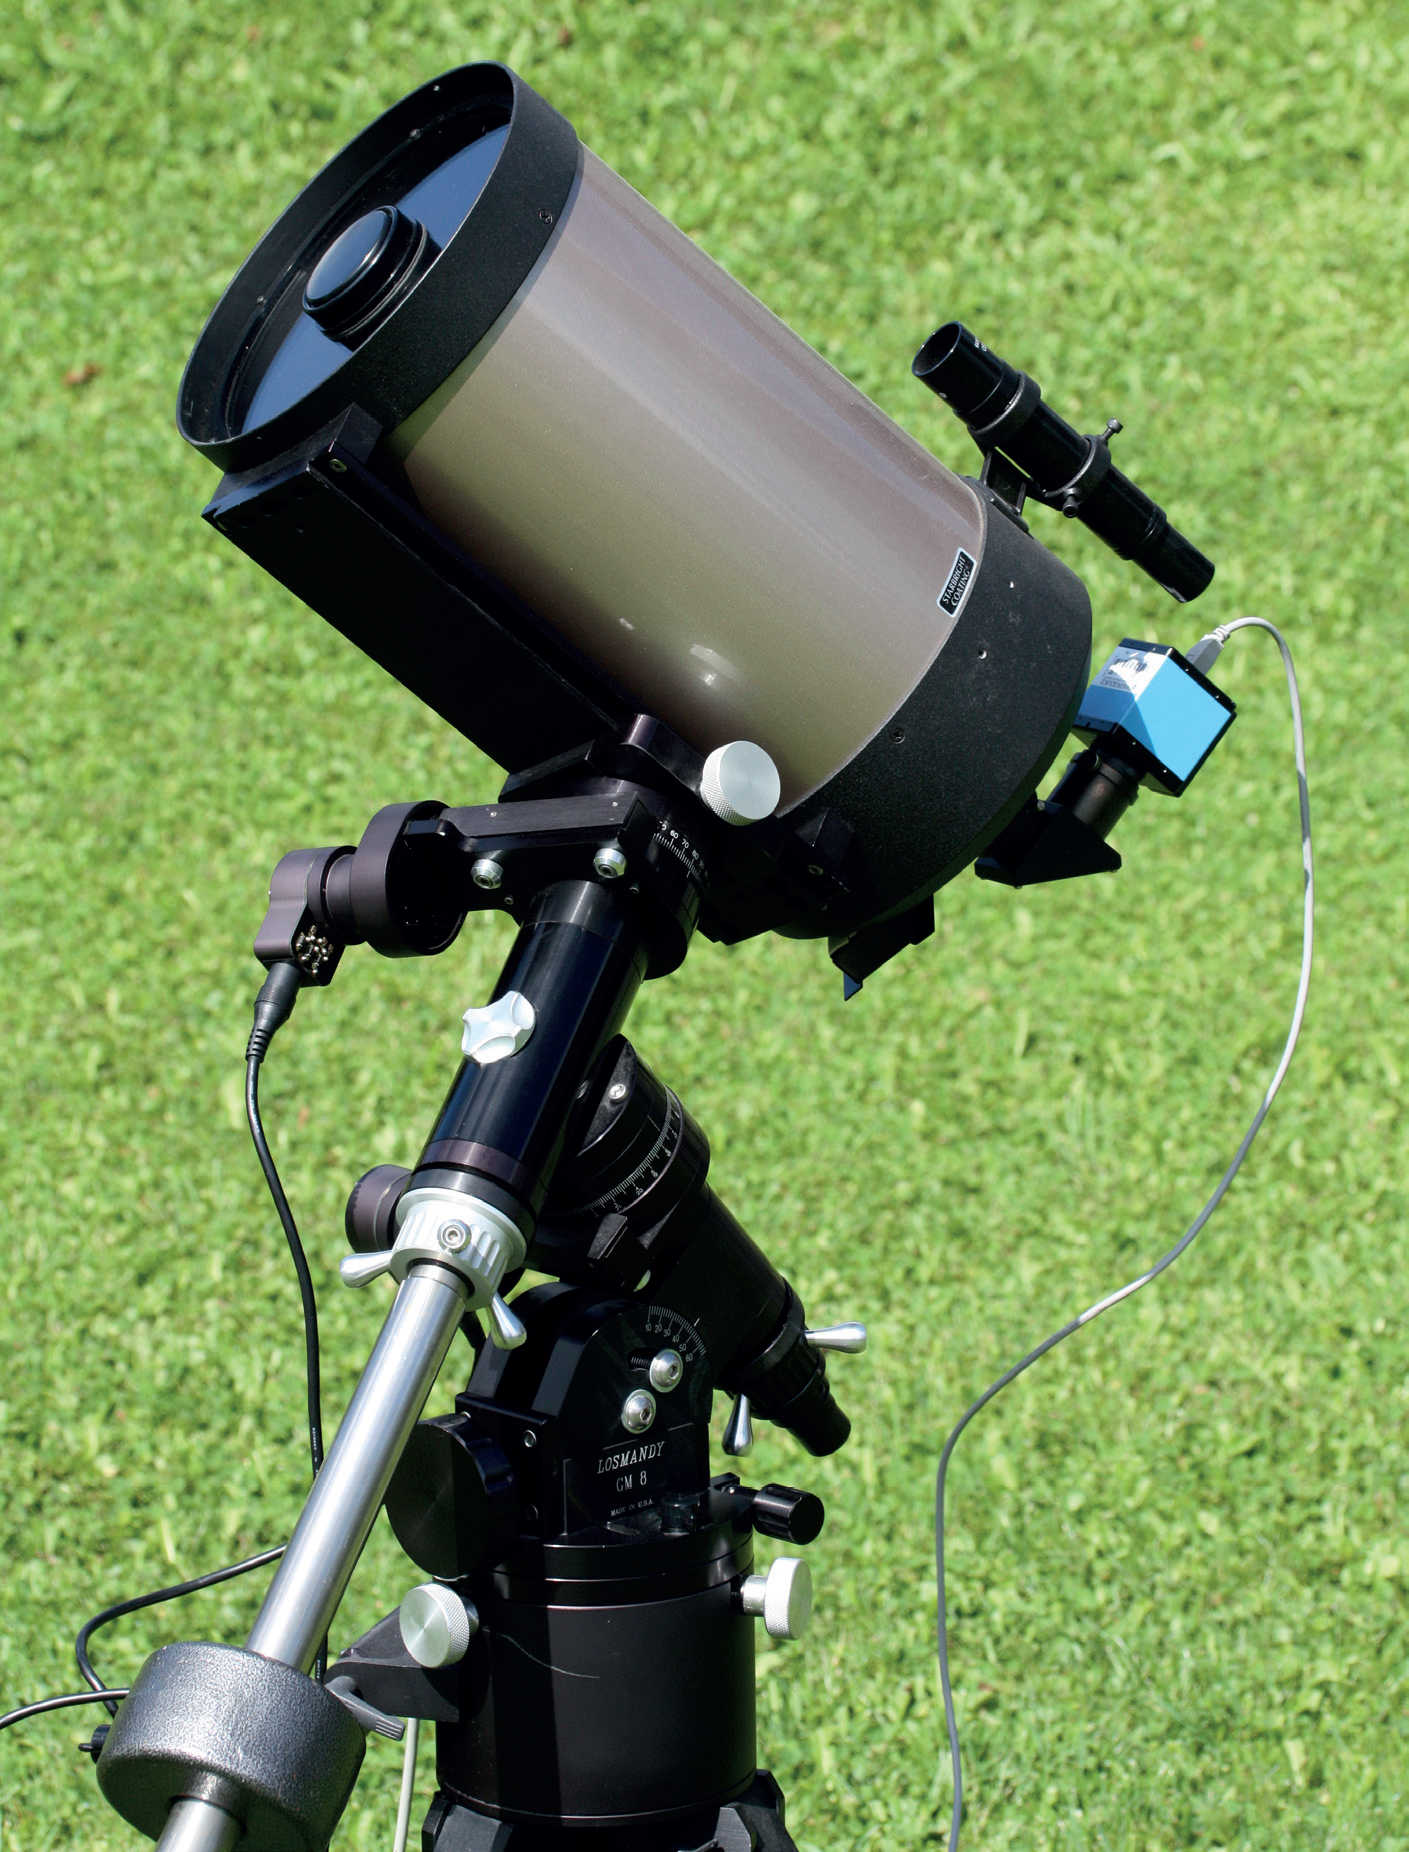 Kompaktowe teleskopy długoogniskowe, takie jak prezentowany na zdjęciu teleskop Schmidta-Cassegraina idealnie nadają się do fotografii planetarnej. Zmotoryzowany montaż typu niemieckiego umożliwia dokładne śledzenie optyki, a tym samym wykonywanie dłuższych sekwencji ekspozycji za pomocą podłączonej astrokamery. U. Dittler